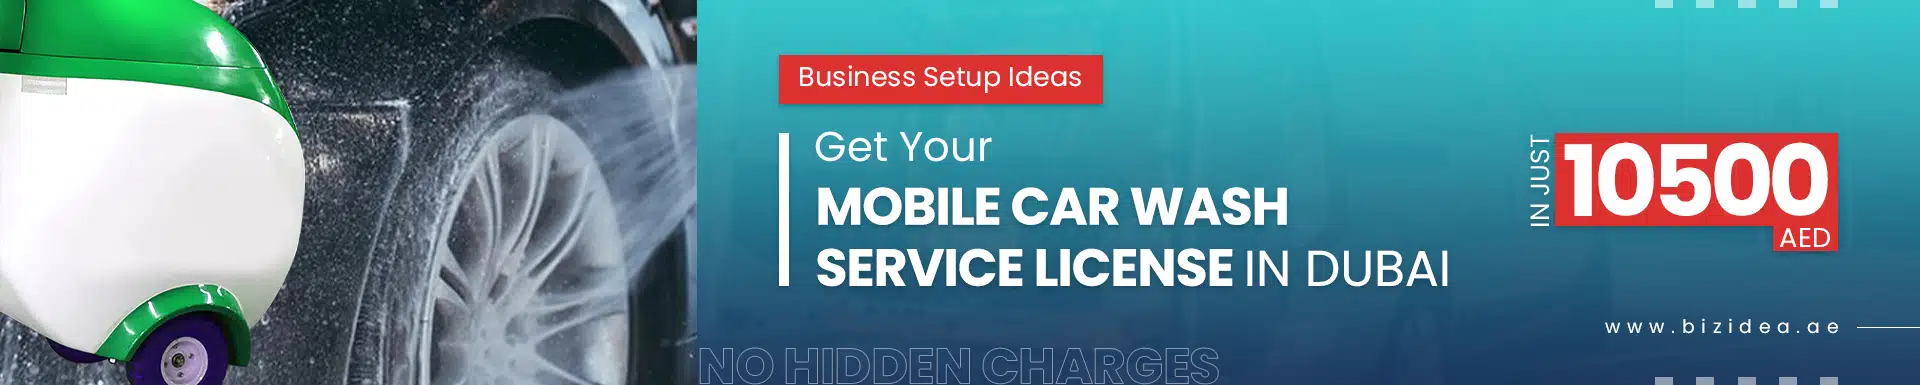 bizidea-mobile-car-wash-license-in-dubai-for-professional